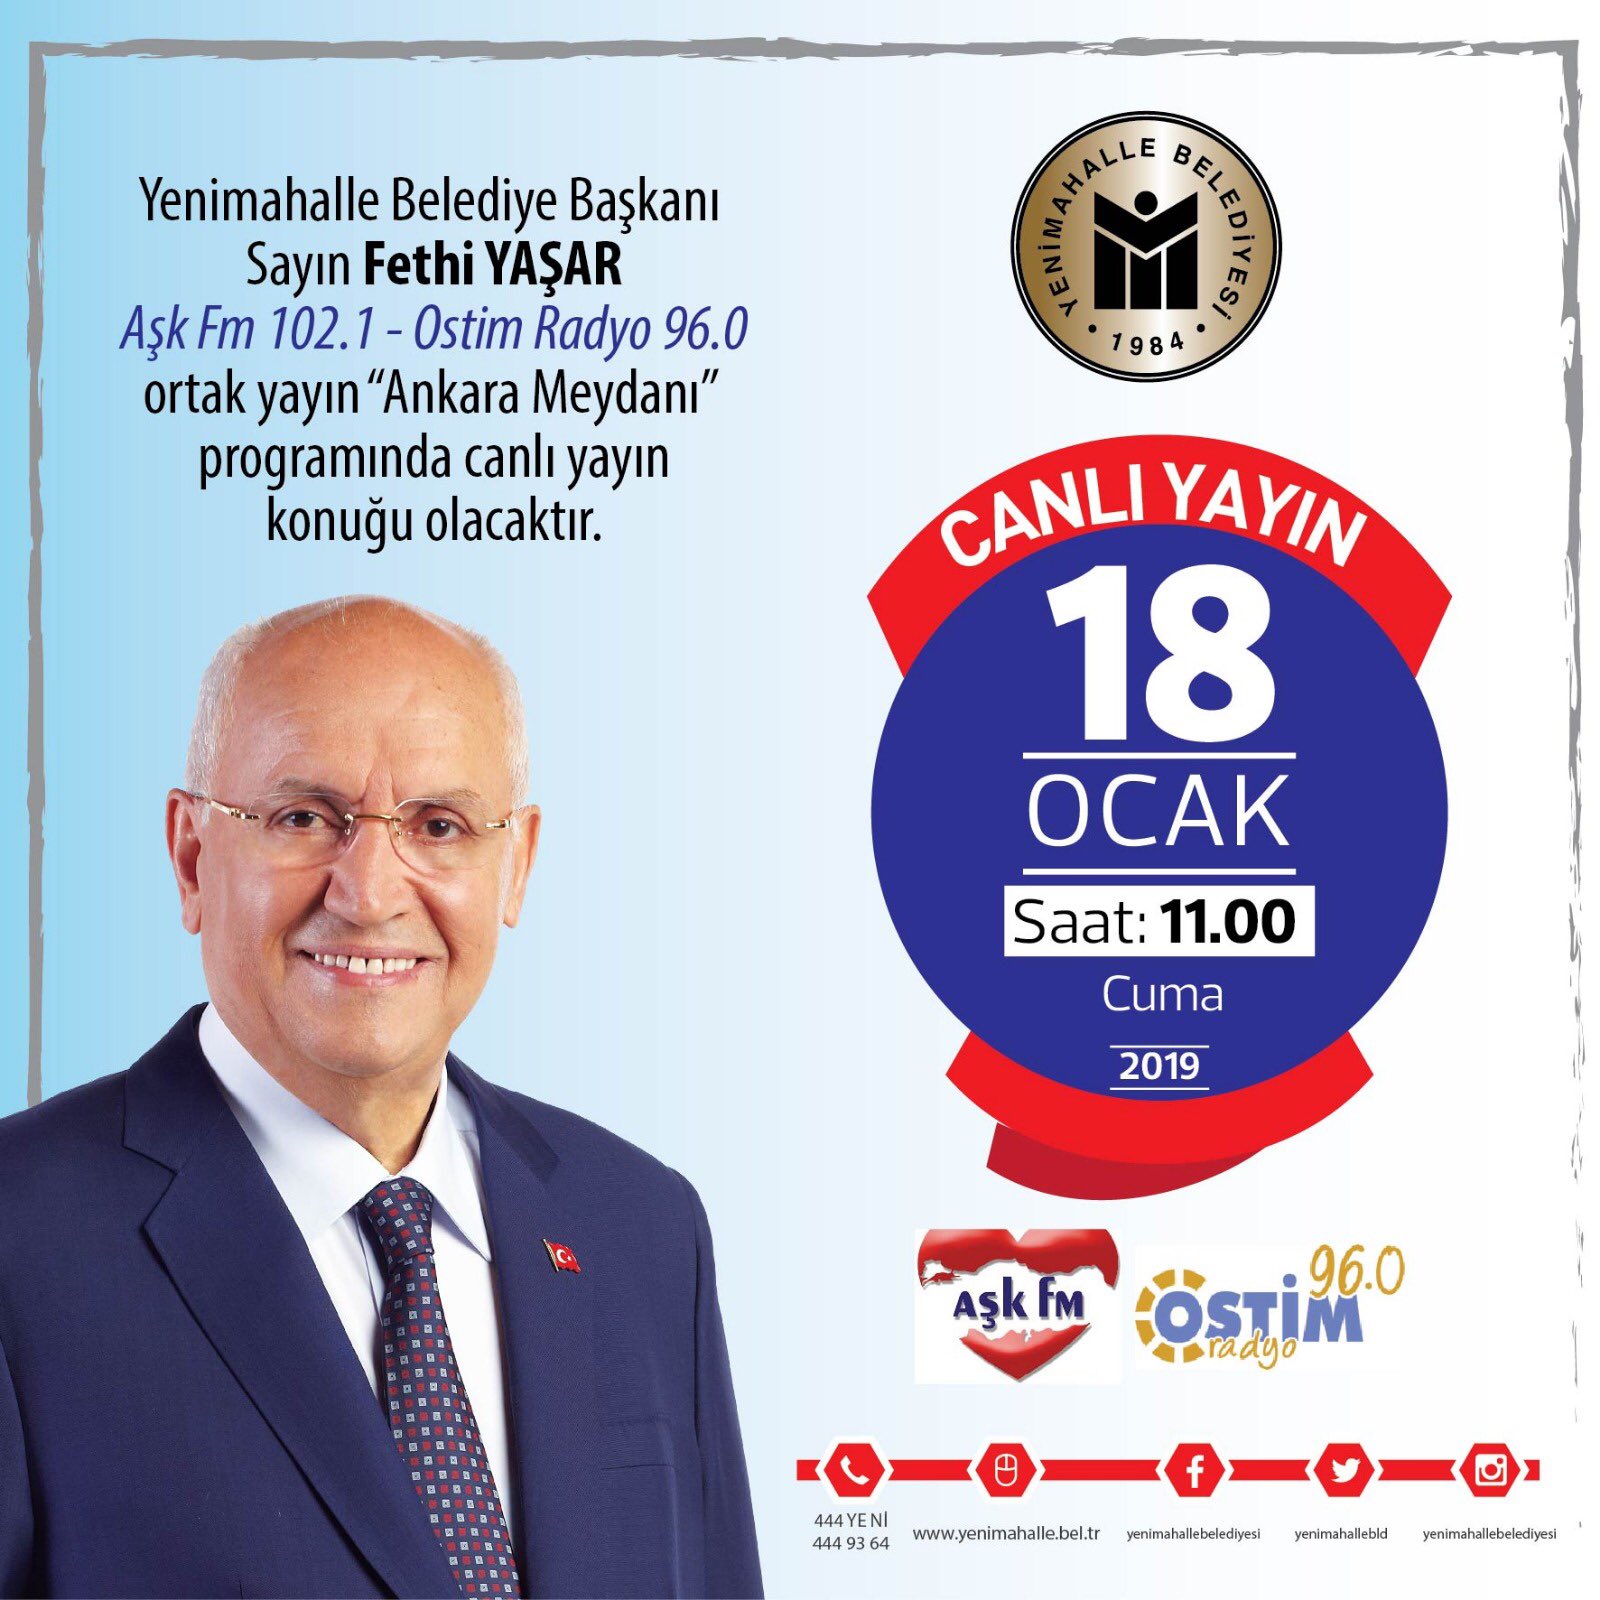 Fethi Yaşar on X: "Yarın 11.00'de Aşk Fm (102.1) ve Ostim Radyo (96.0)  ortak yayınında 'Ankara Meydanı' programına canlı yayın konuğu olacağım.  Dinleyebilmeniz dileğiyle. https://t.co/AJeM8WYQgm" / X